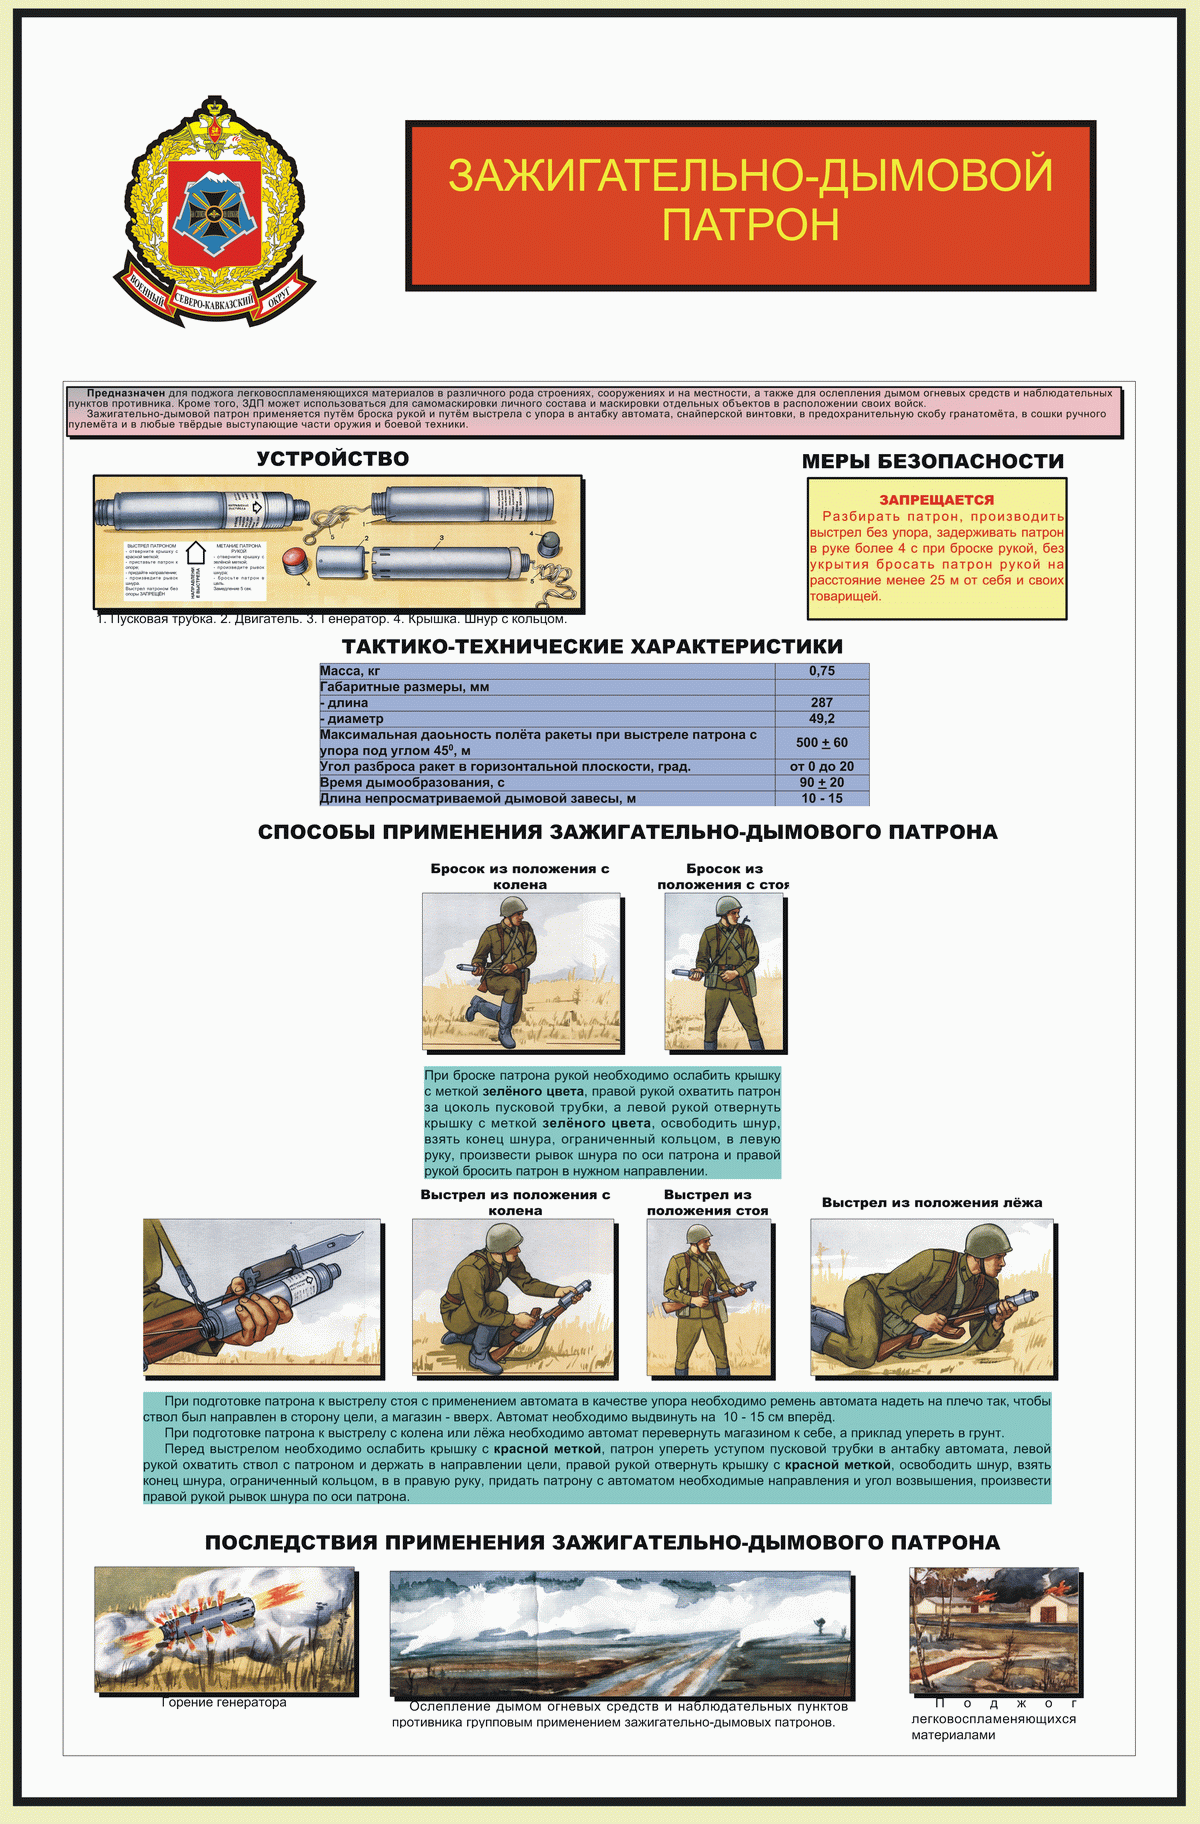 Зажигательно-дымовой патрон (устройство, тактико-технические характеристики и способы применения)